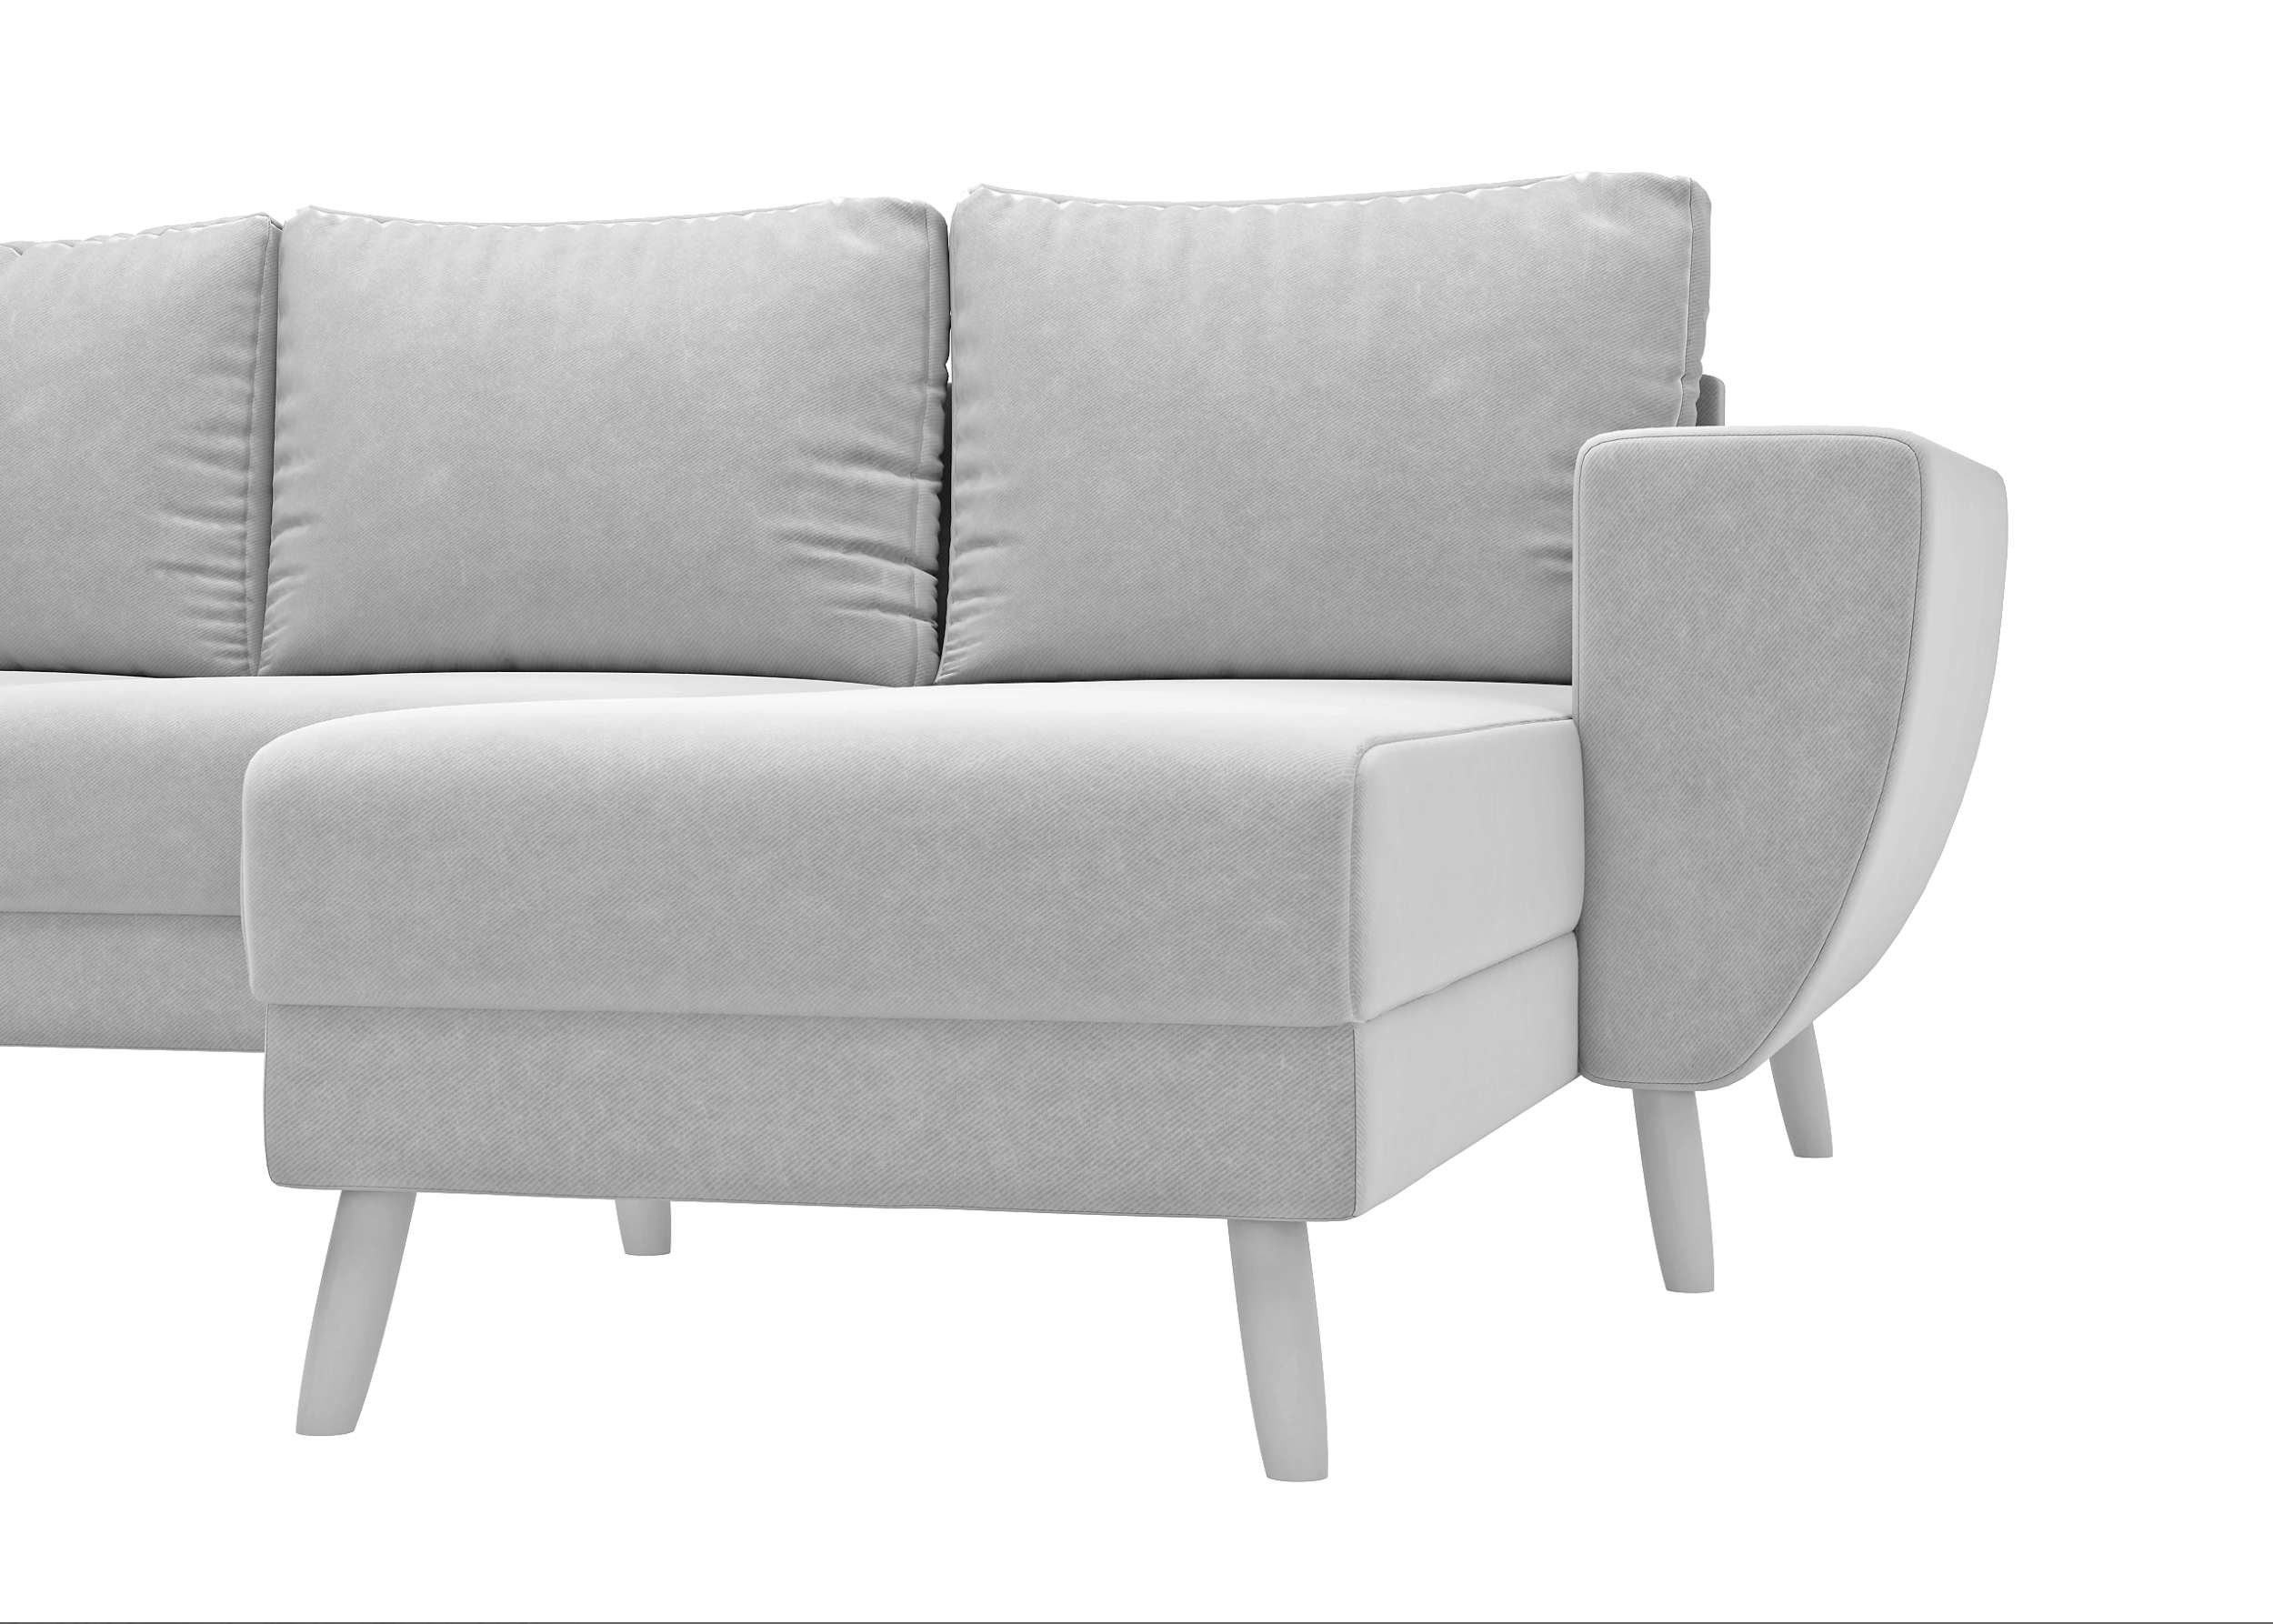 Stylefy stellbar, frei Apollo, bestellbar, oder Wellenfederung im U-Form, Design, links Wohnlandschaft Raum Sofa, Modern mane mit rechts